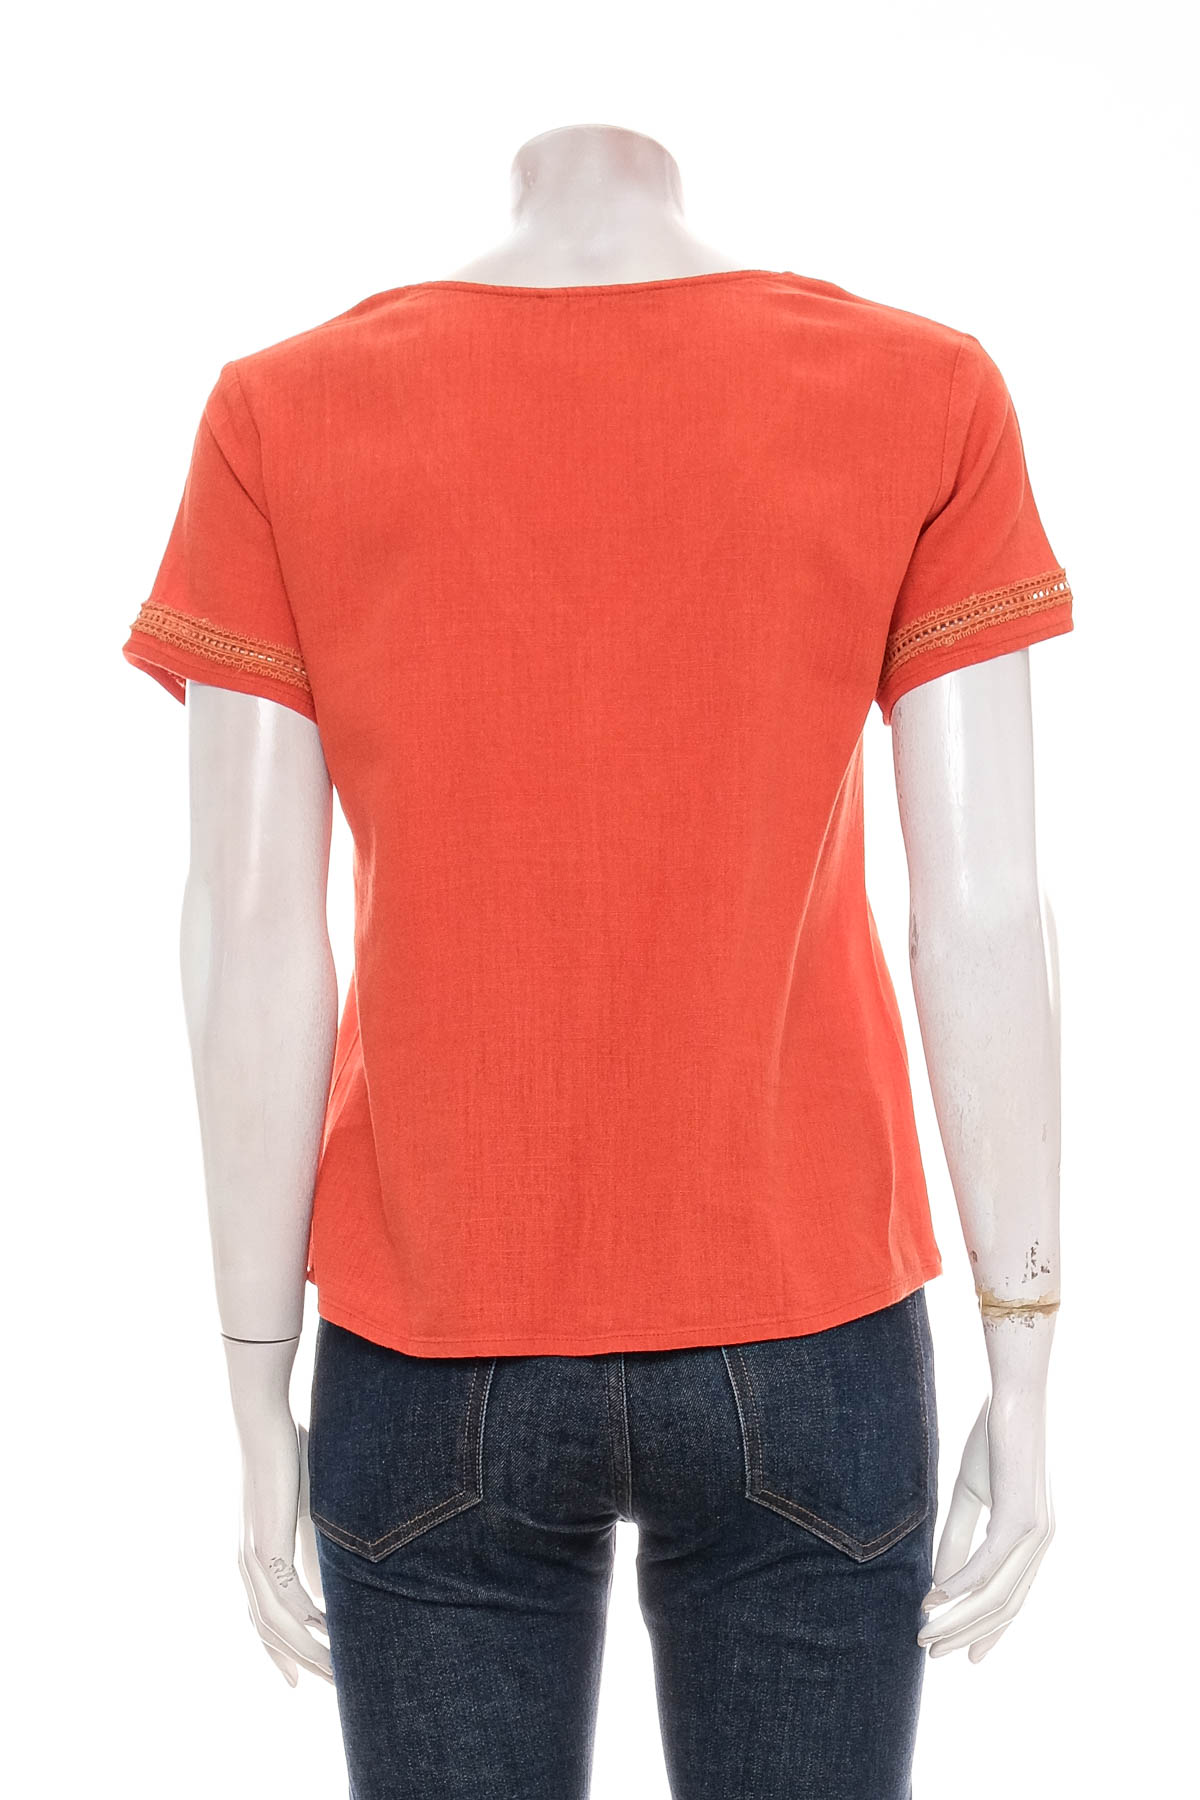 Γυναικείо πουκάμισο - Freeman T. Porter - 1